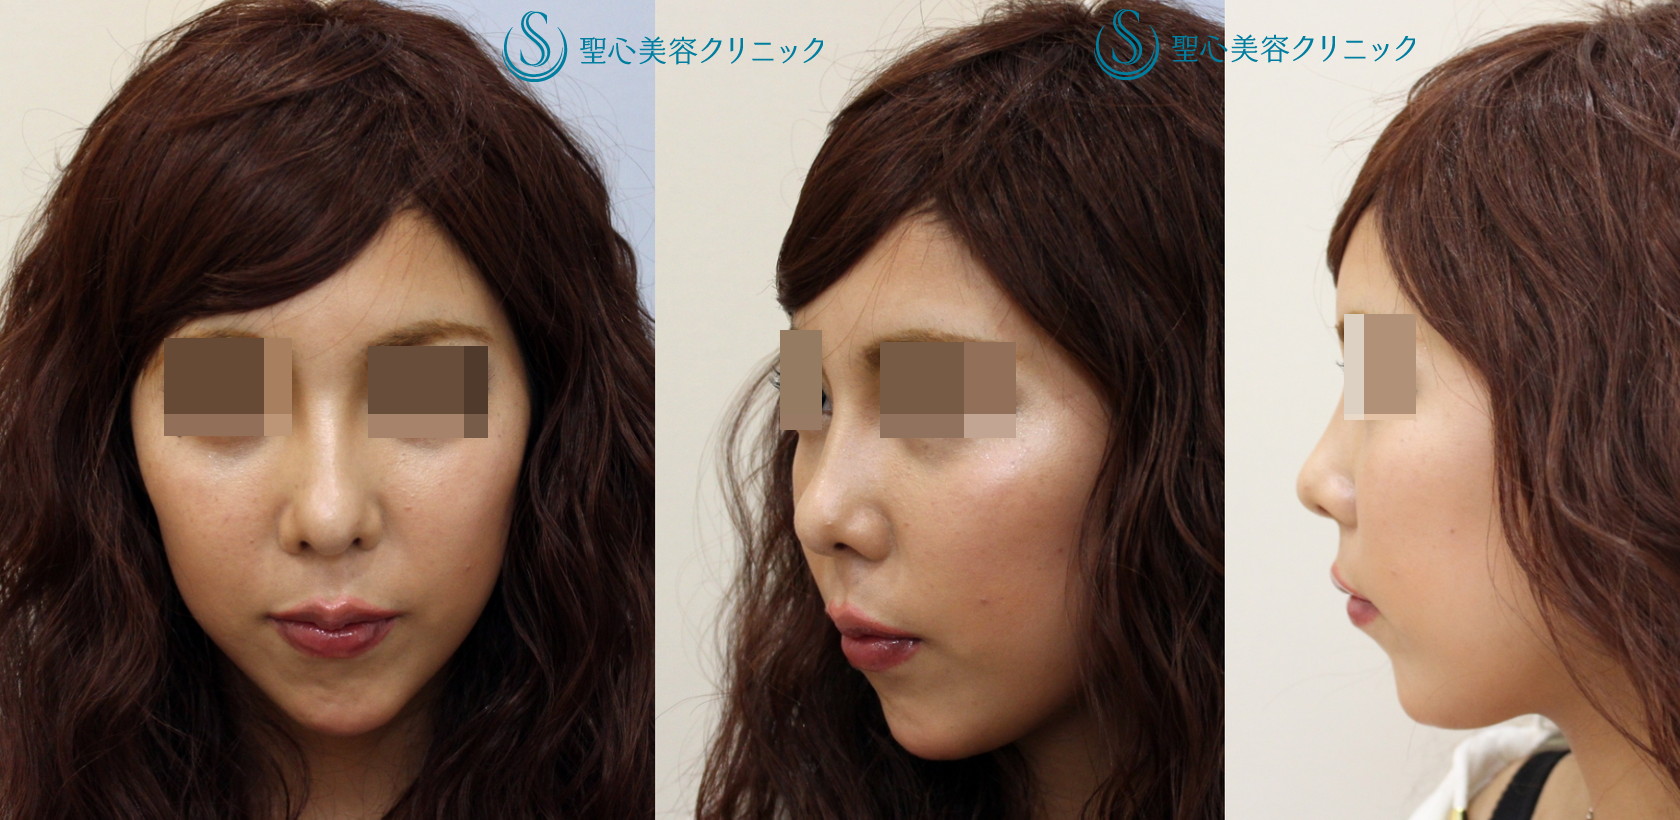 代女性 上向きの鼻を治してｅラインを整えたい 鼻尖 鼻柱耳介軟骨移植 1ヶ月後 症例写真 美容整形 美容外科なら聖心美容クリニック